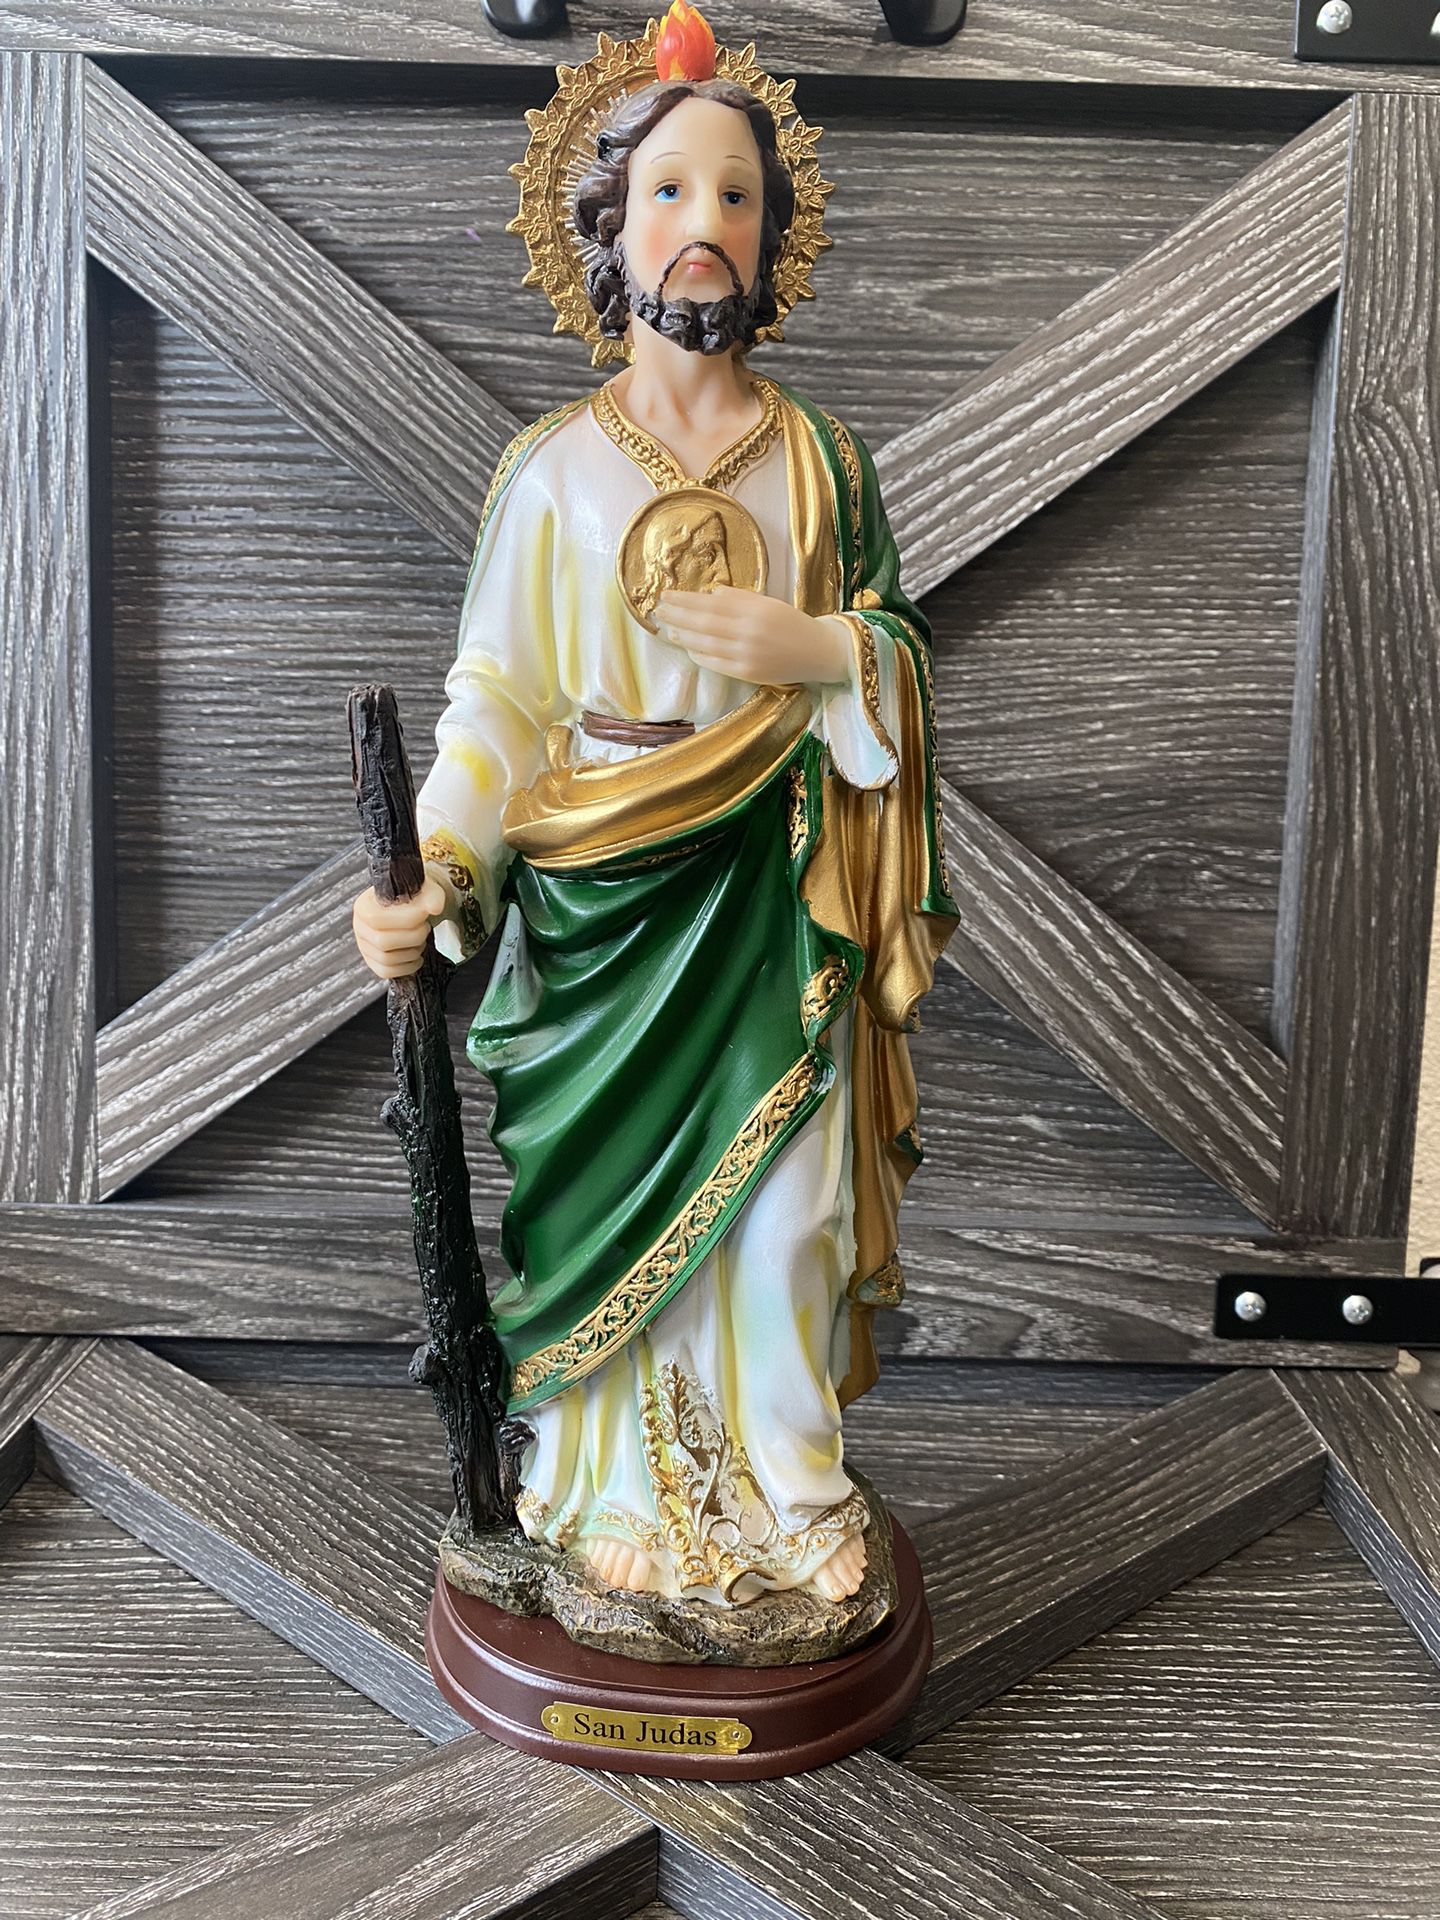 San Judas Statua 12” Nuevo Jude The Apostle Statue 12” New In Box 